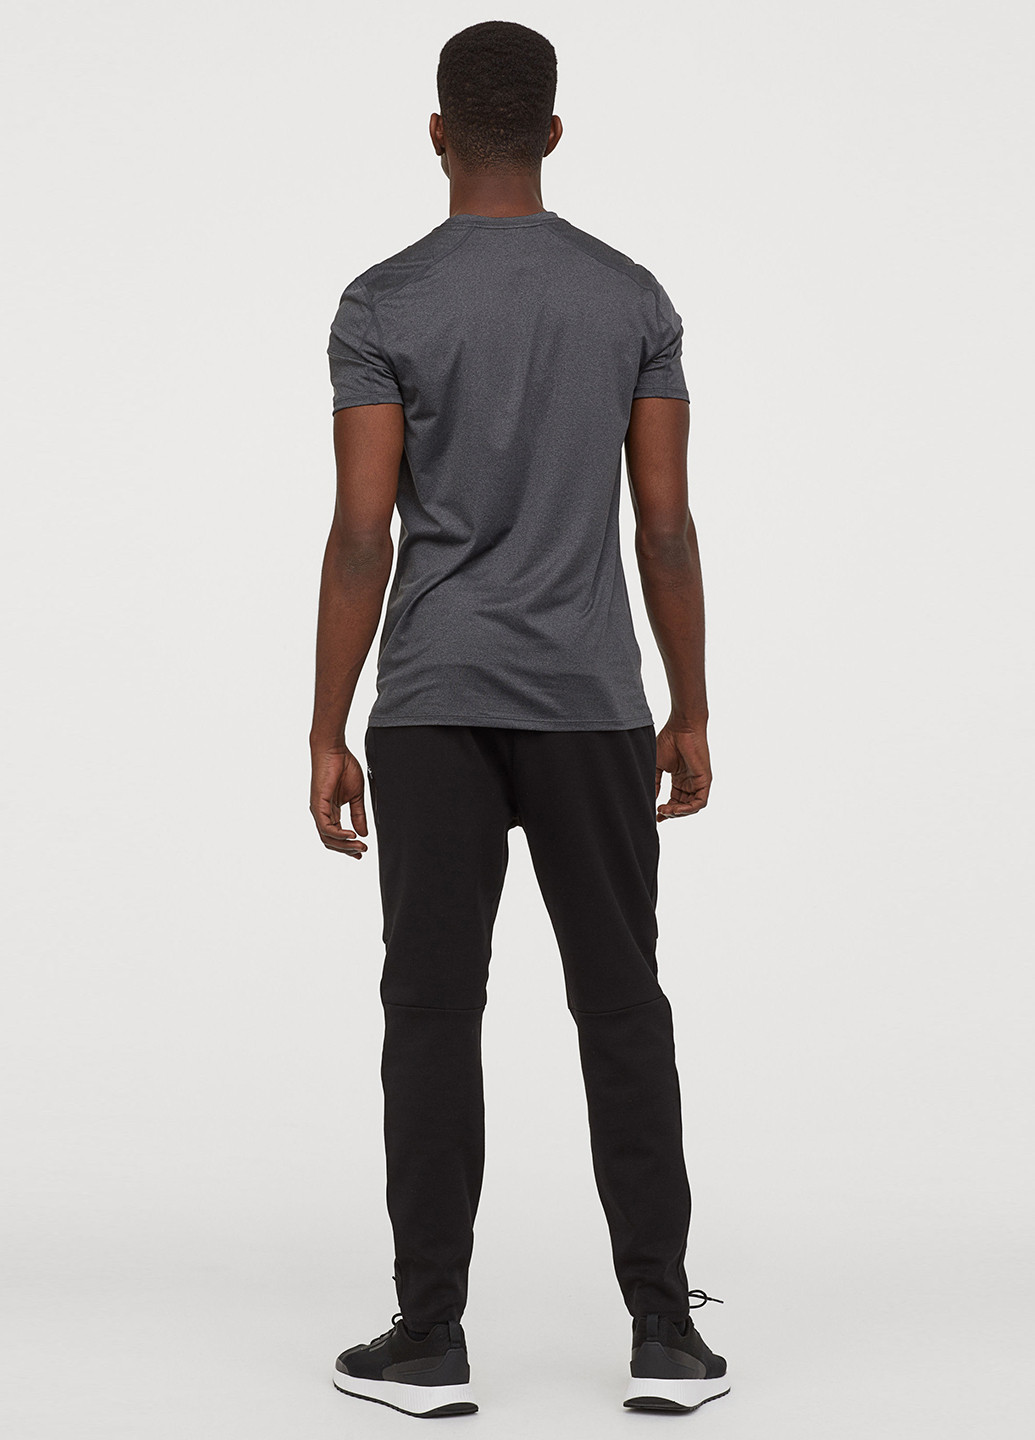 Черные спортивные демисезонные зауженные брюки H&M